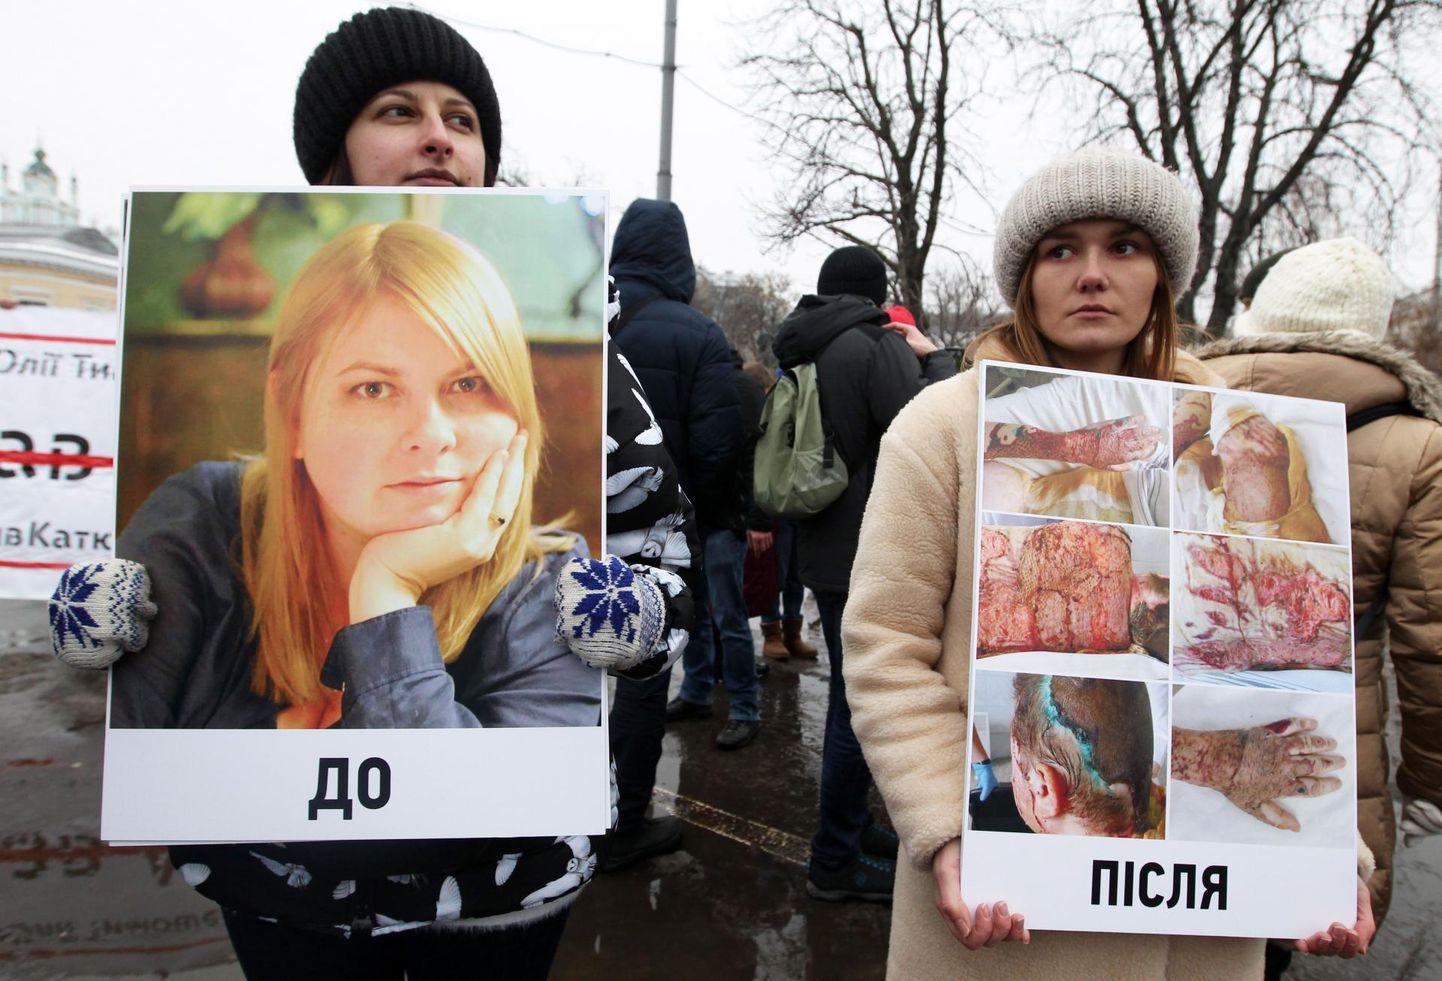 Veebruari alguses nõudsid aktivistid Kiievis korraldatud meeleavaldusel Katerõna Gandzjuki mõrva korraldajate ja tellijate vastutusele võtmist. Protestijatel on käes pildid Gandzjukist enne ja pärast happerünnakut mullu suvel. Naine suri kolm kuud pärast rünnakut Hersoni linnas.